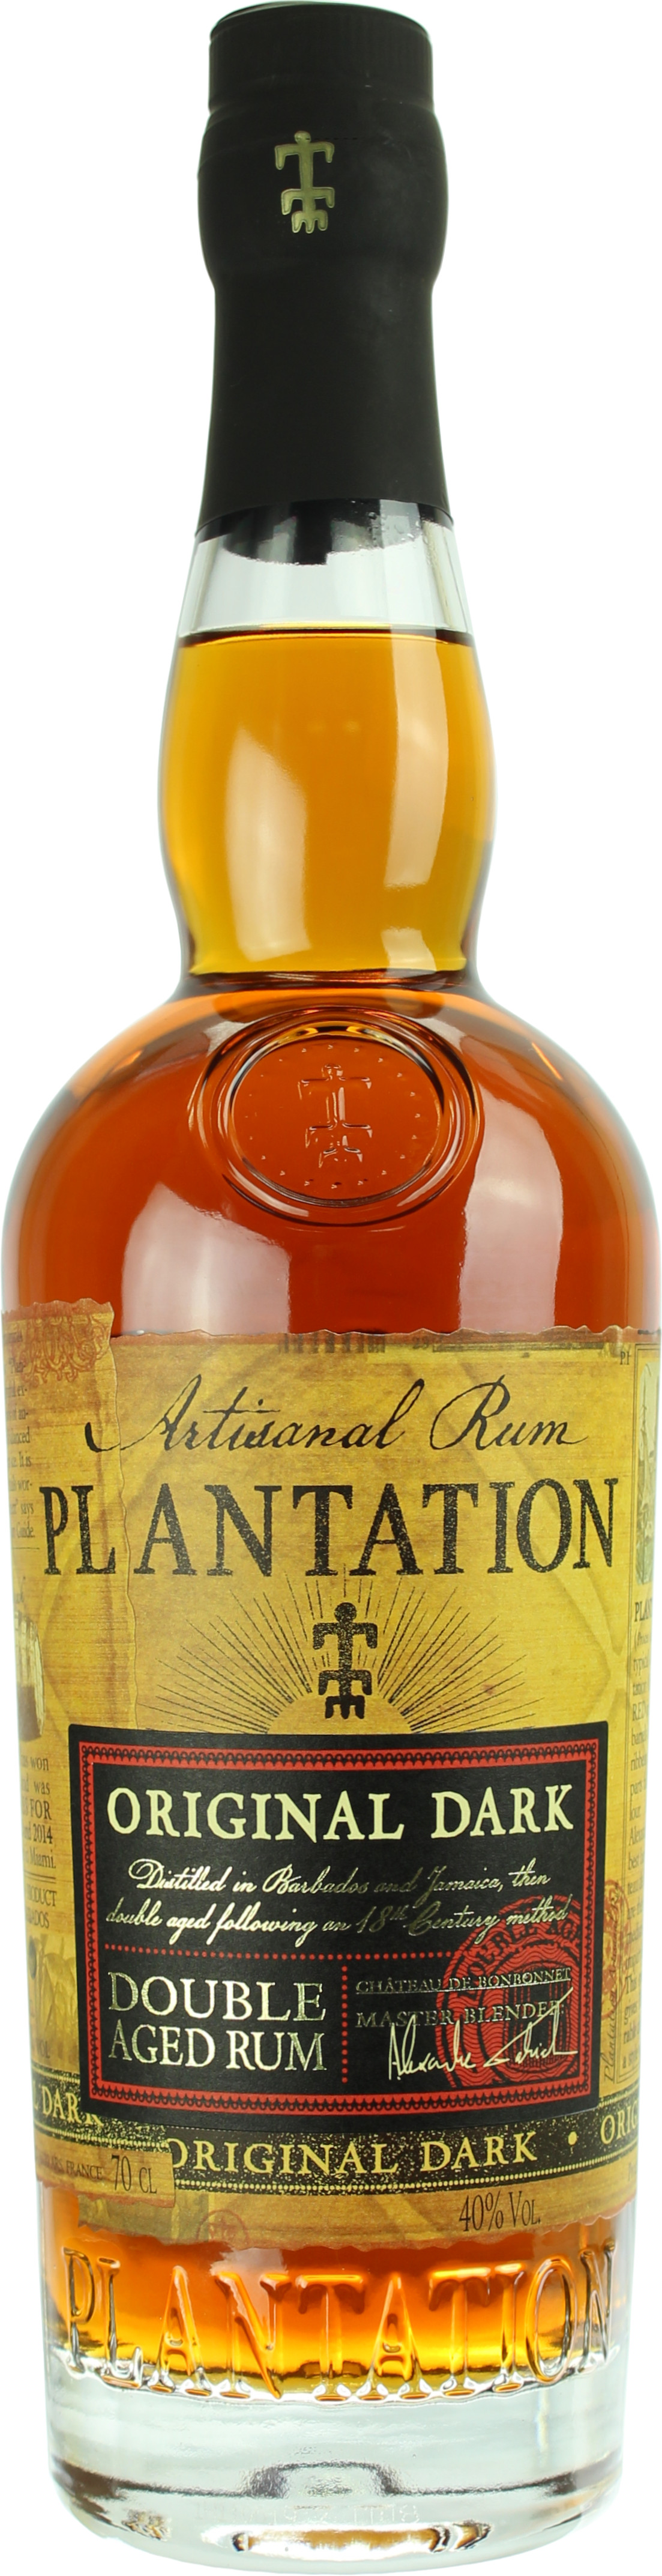 Plantation Original Dark Rum 40.0% 0,7l